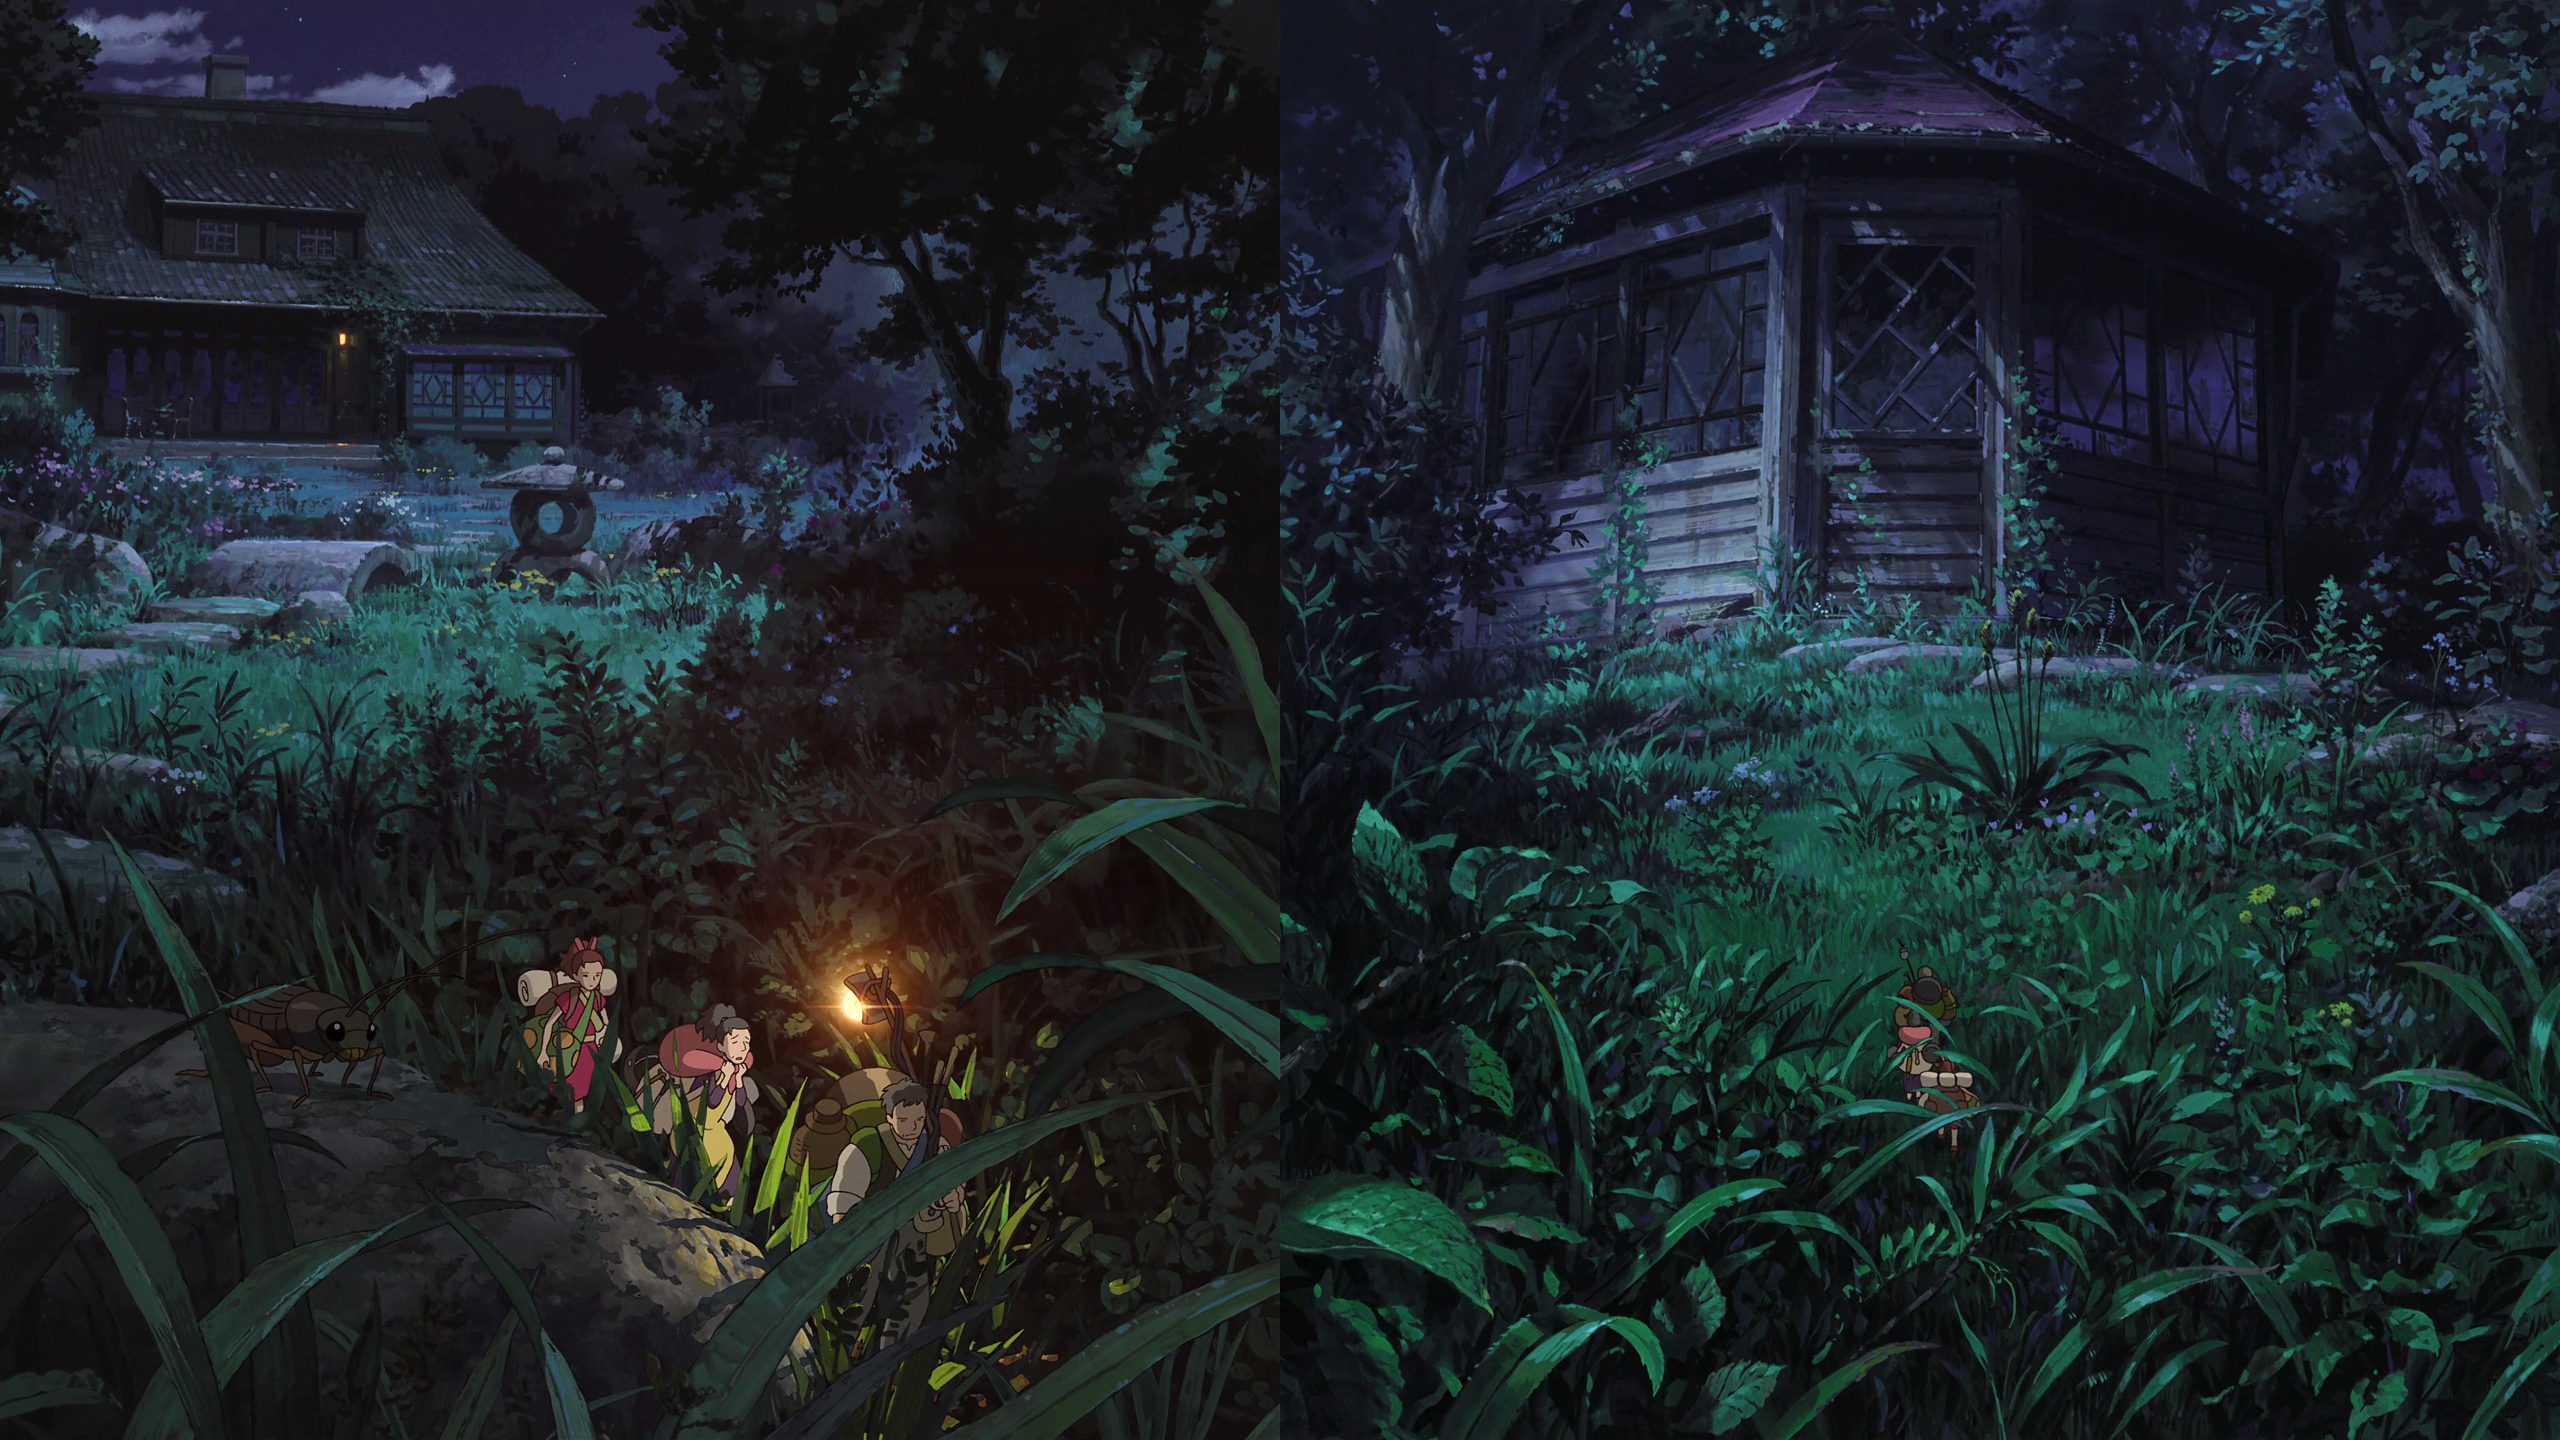 2560x1440 100 Studio Ghibli wallpapers Imgur | Studio ghibli background, Ghibli, Studio ghibli